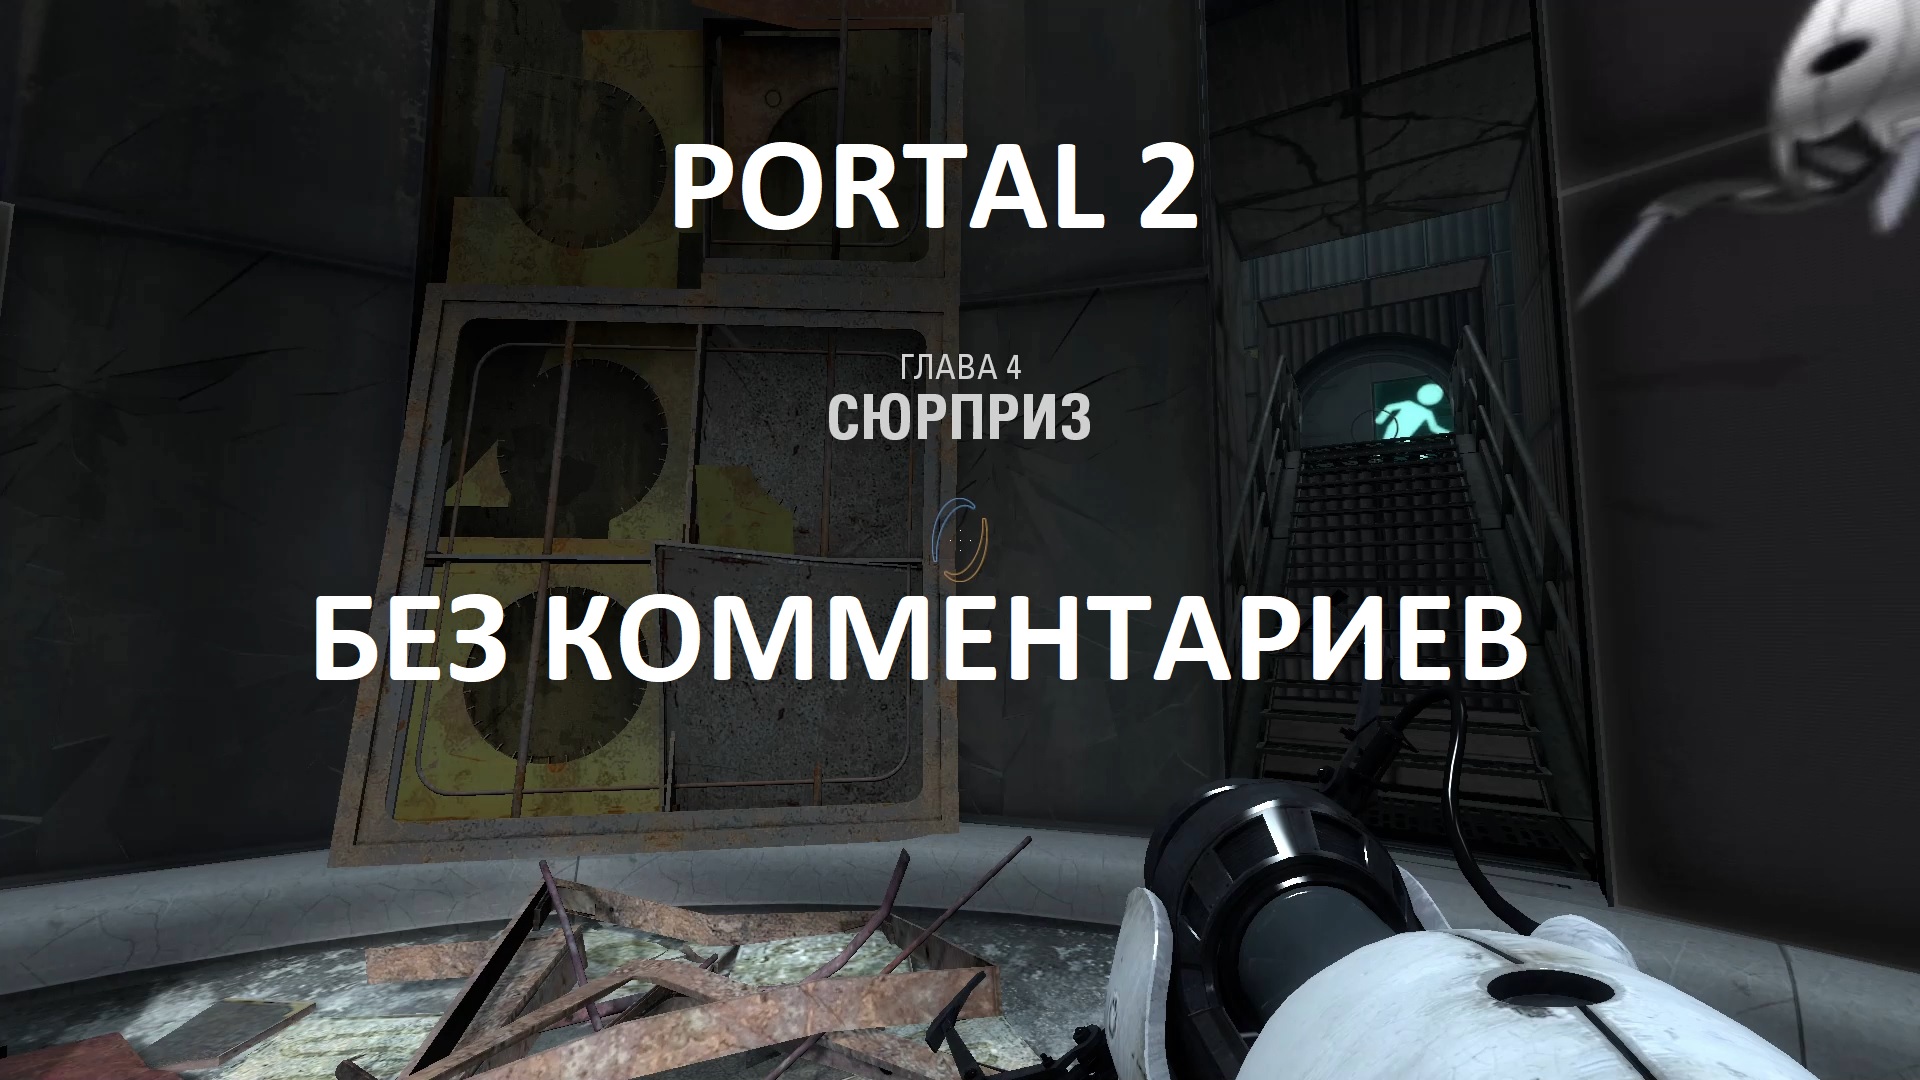 Portal 2 8 уровень кооператив фото 22